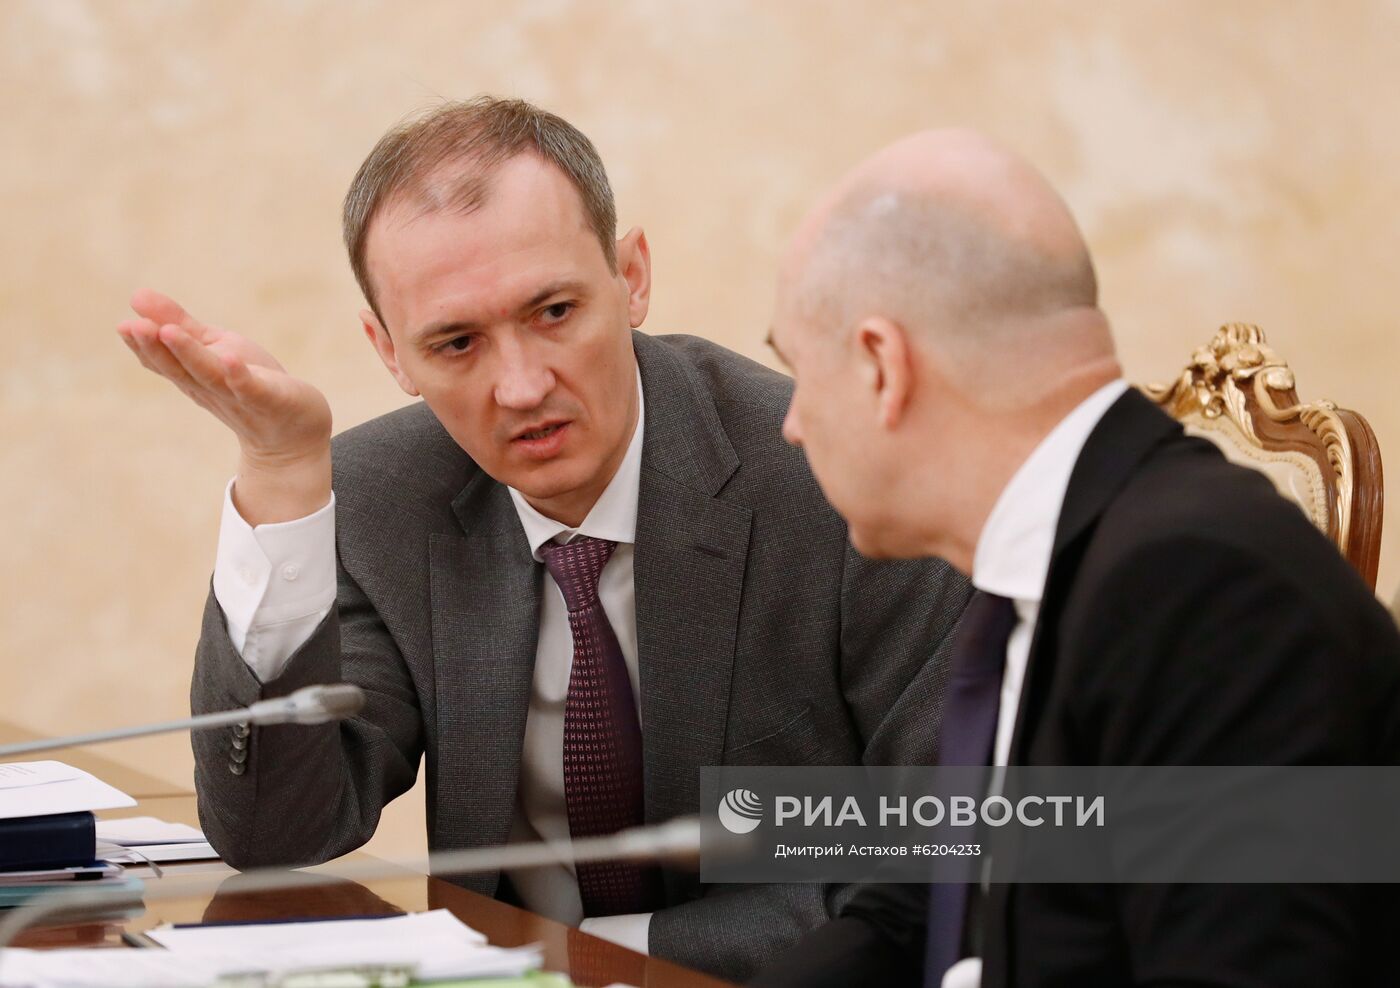 Премьер-министр РФ М. Мишустин провел заседание по противодействию коронавирусной инфекции